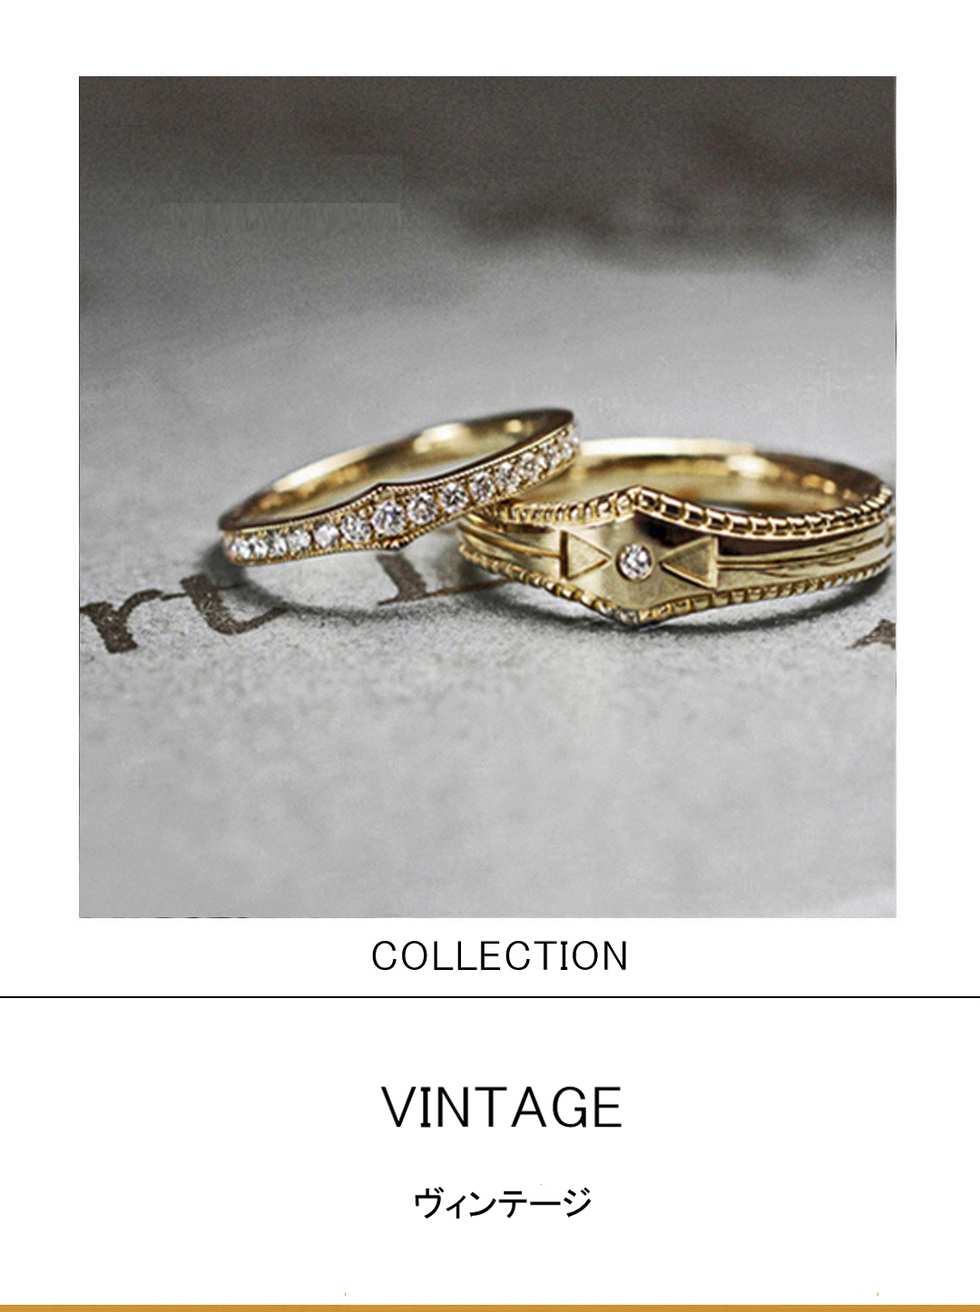 １８００年代アンティークデザインの結婚指輪ゴールドコレクション 千葉 柏の結婚指輪 婚約指輪 ヨーアンドマーレ